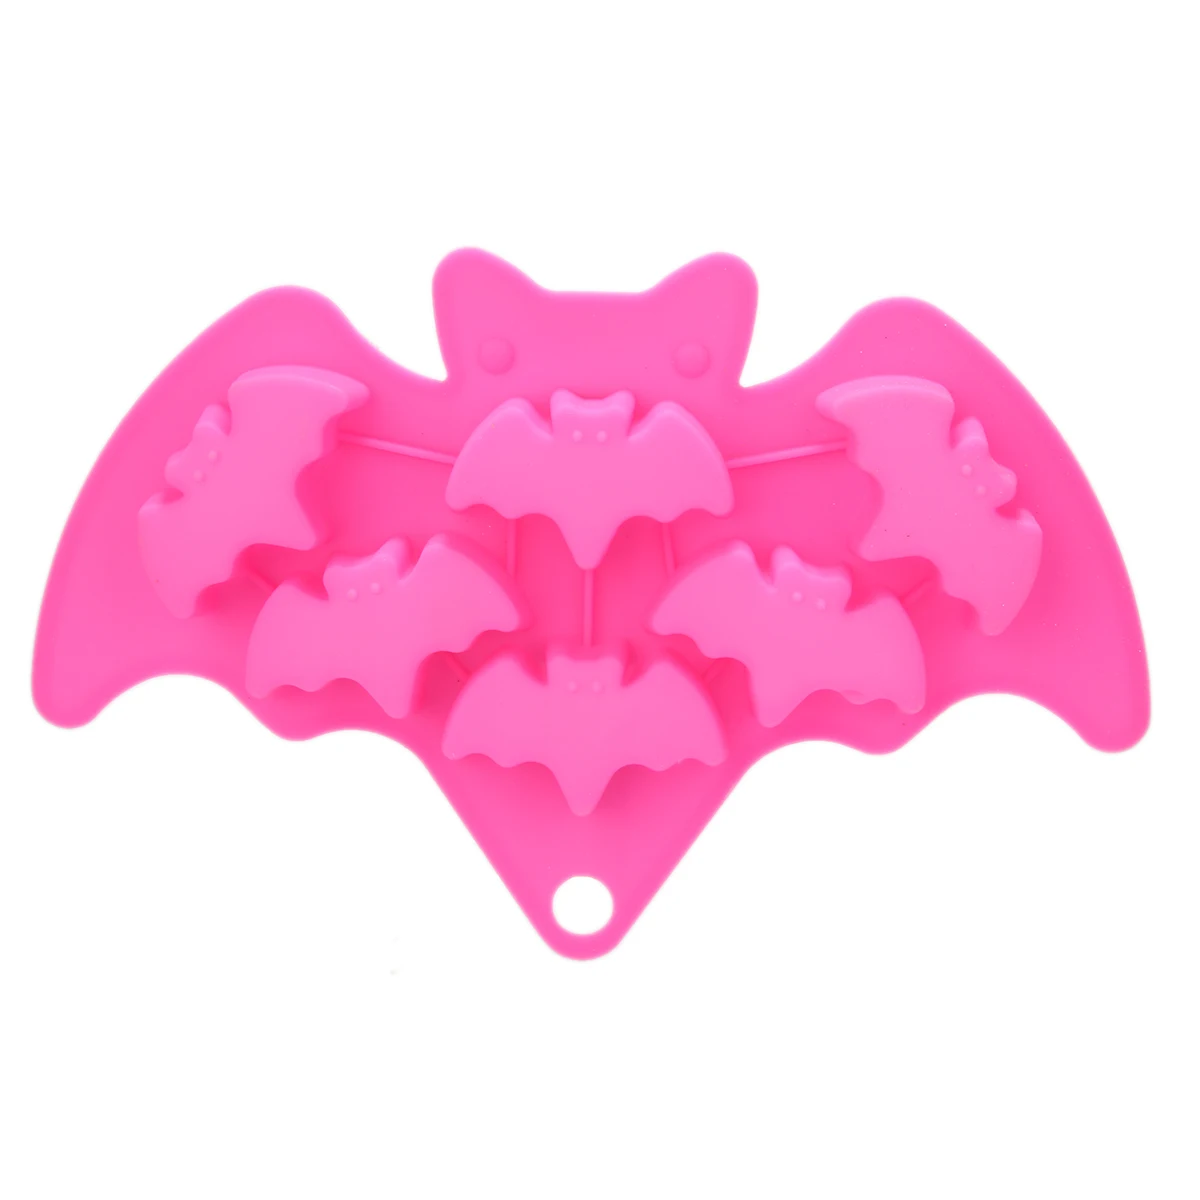 1 комплект формы на Хэллоуин ведьмы кости призрачная летучая мышь силиконовая помадка Гибкая Хэллоуин торт плесень мыло формы украшения инструменты цвет случайный - Цвет: Bat